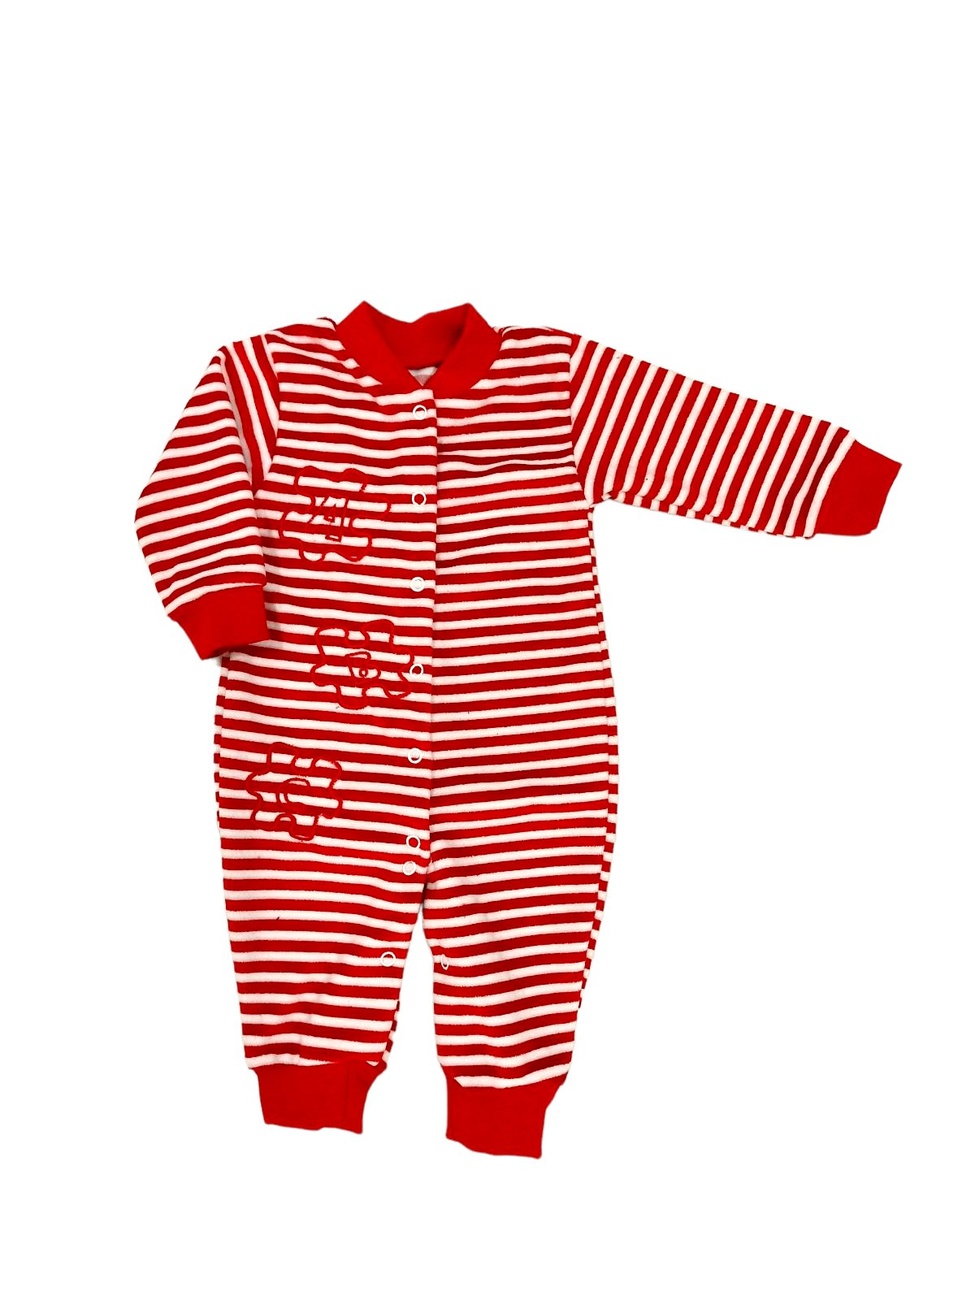 Ясельний трикотажний комбінезон для новорожденного. Комбинезон велюр полосатый с вышивкой красного цвета. ТМ «Пташка Украина»